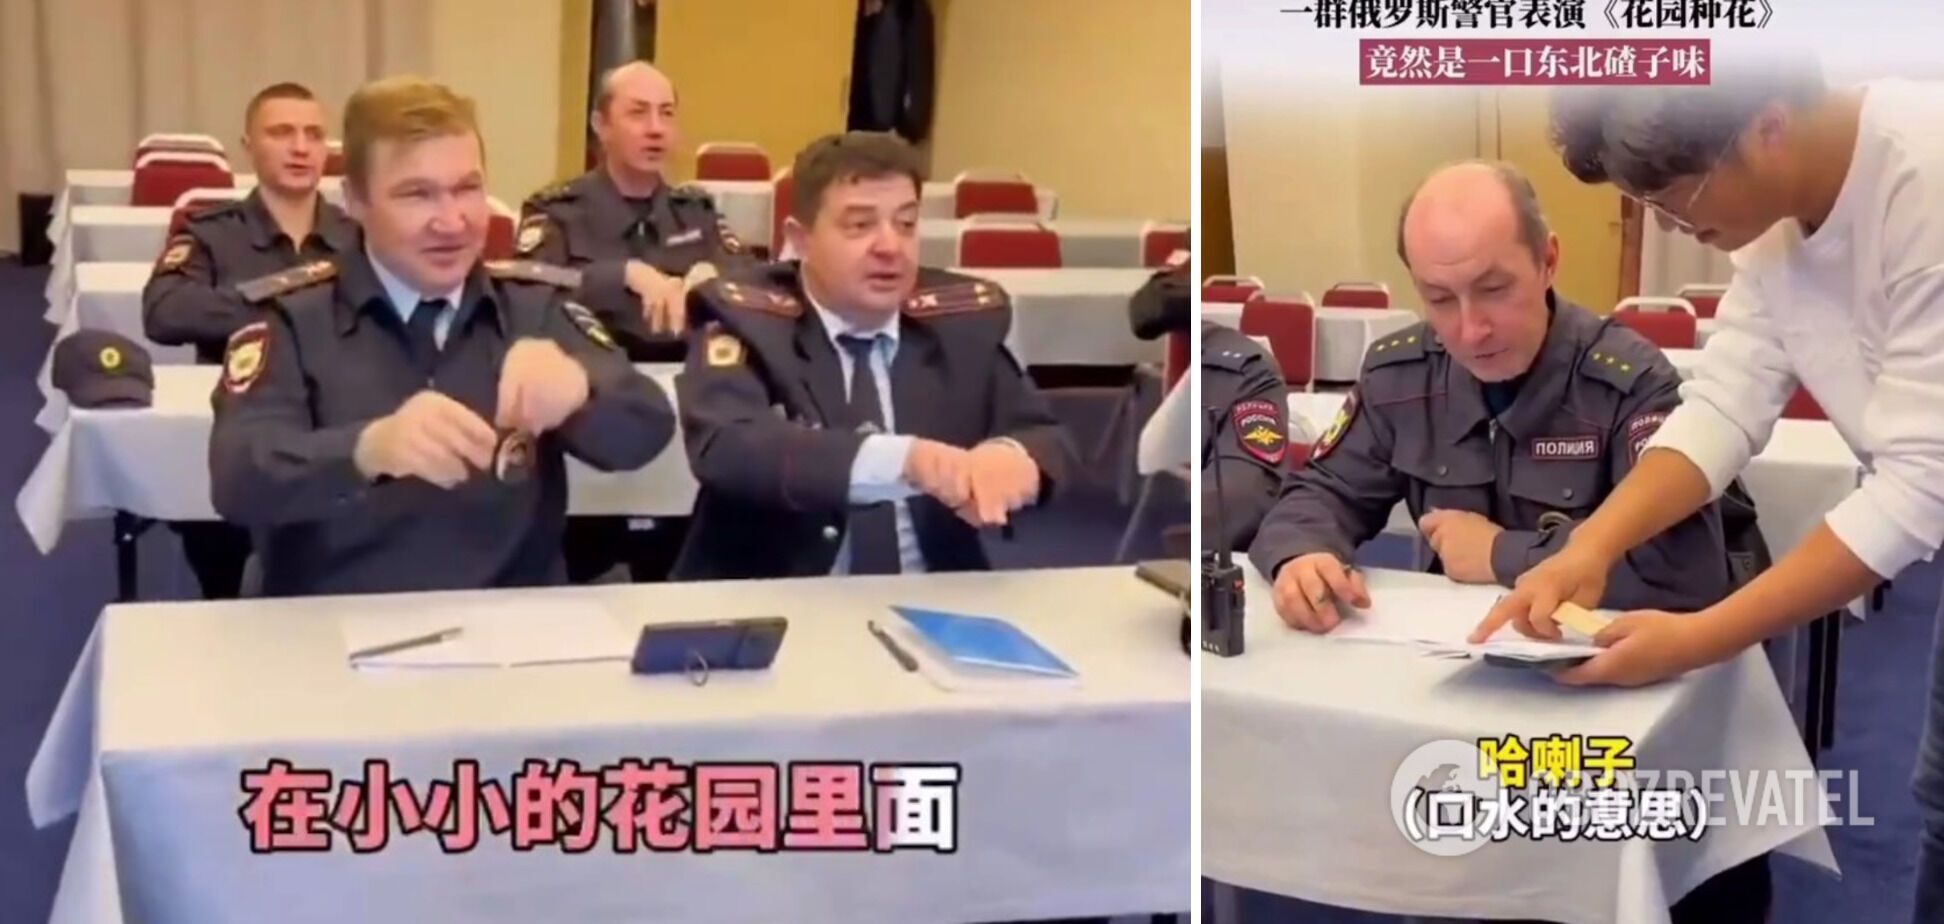 Przygotowują się do czegoś? W sieci pojawiło się nagranie, na którym rosyjska policja uczy się śpiewać po chińsku